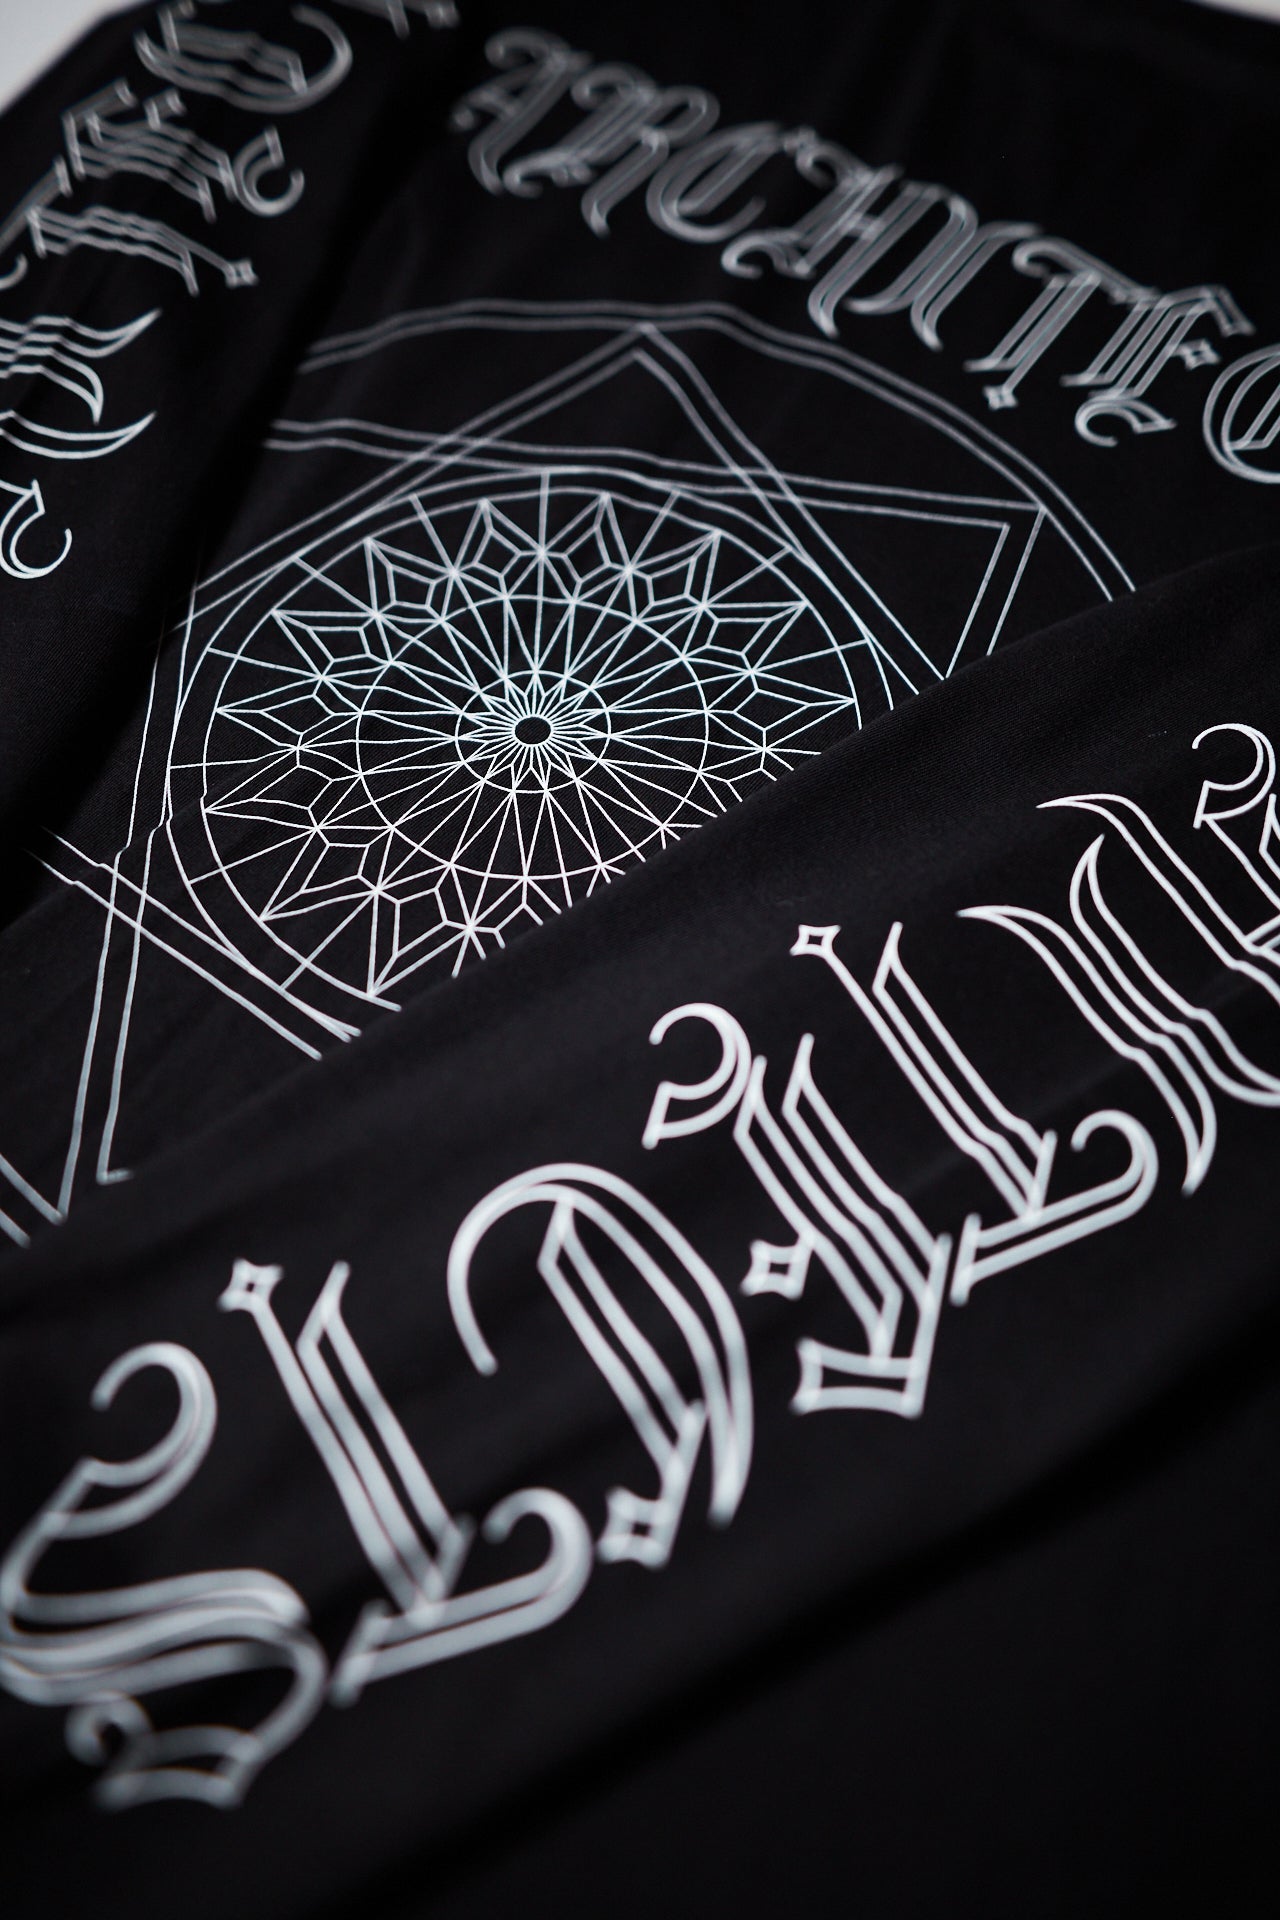 Stained Glass Pentagram Long Sleeve - Black